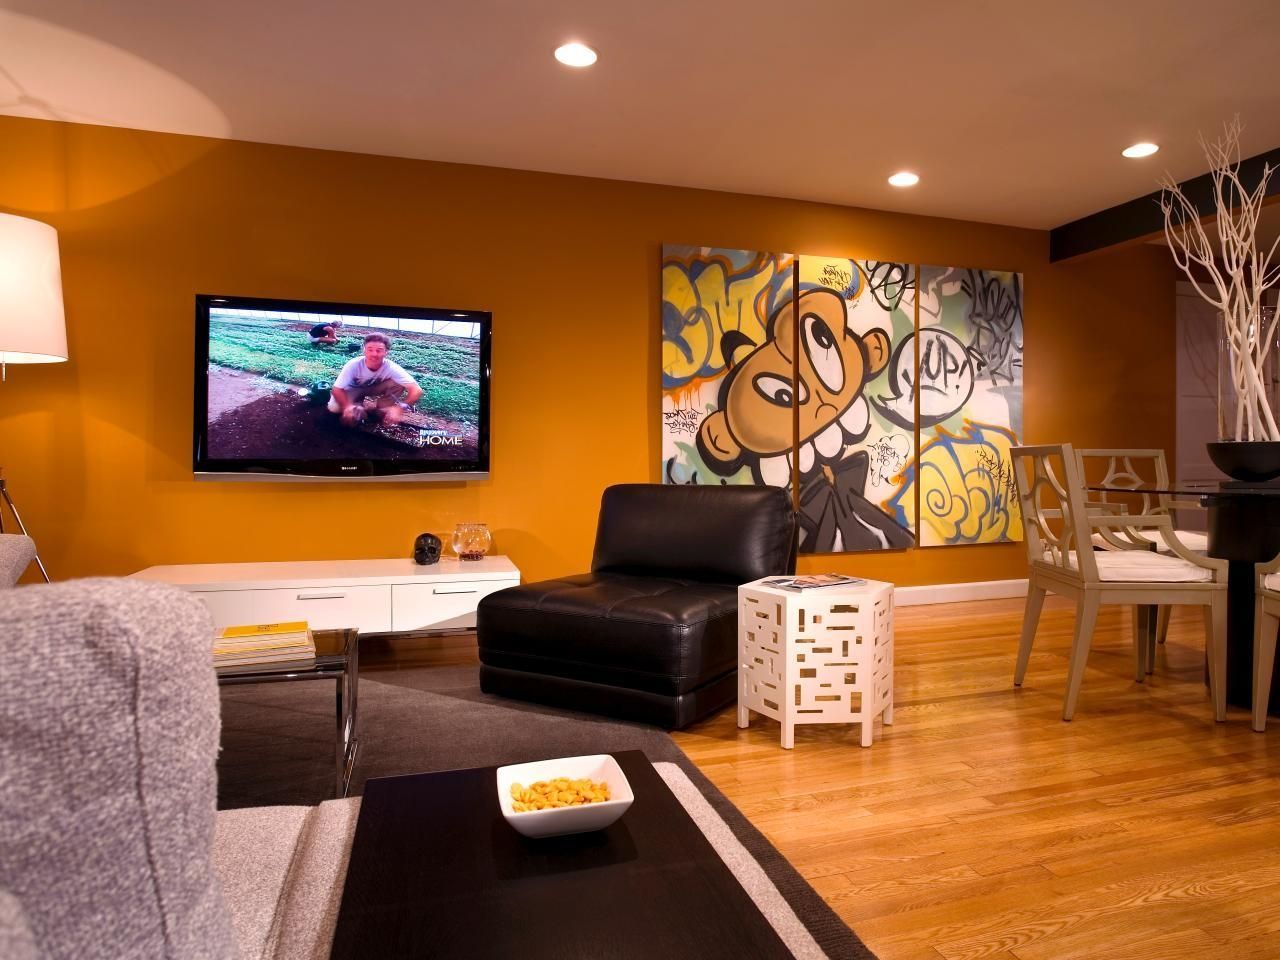 Wall Art For Bachelor Pad Living Room Inspirations With Best Pads For Wall Art For Bachelor Pad Living Room (View 4 of 20)